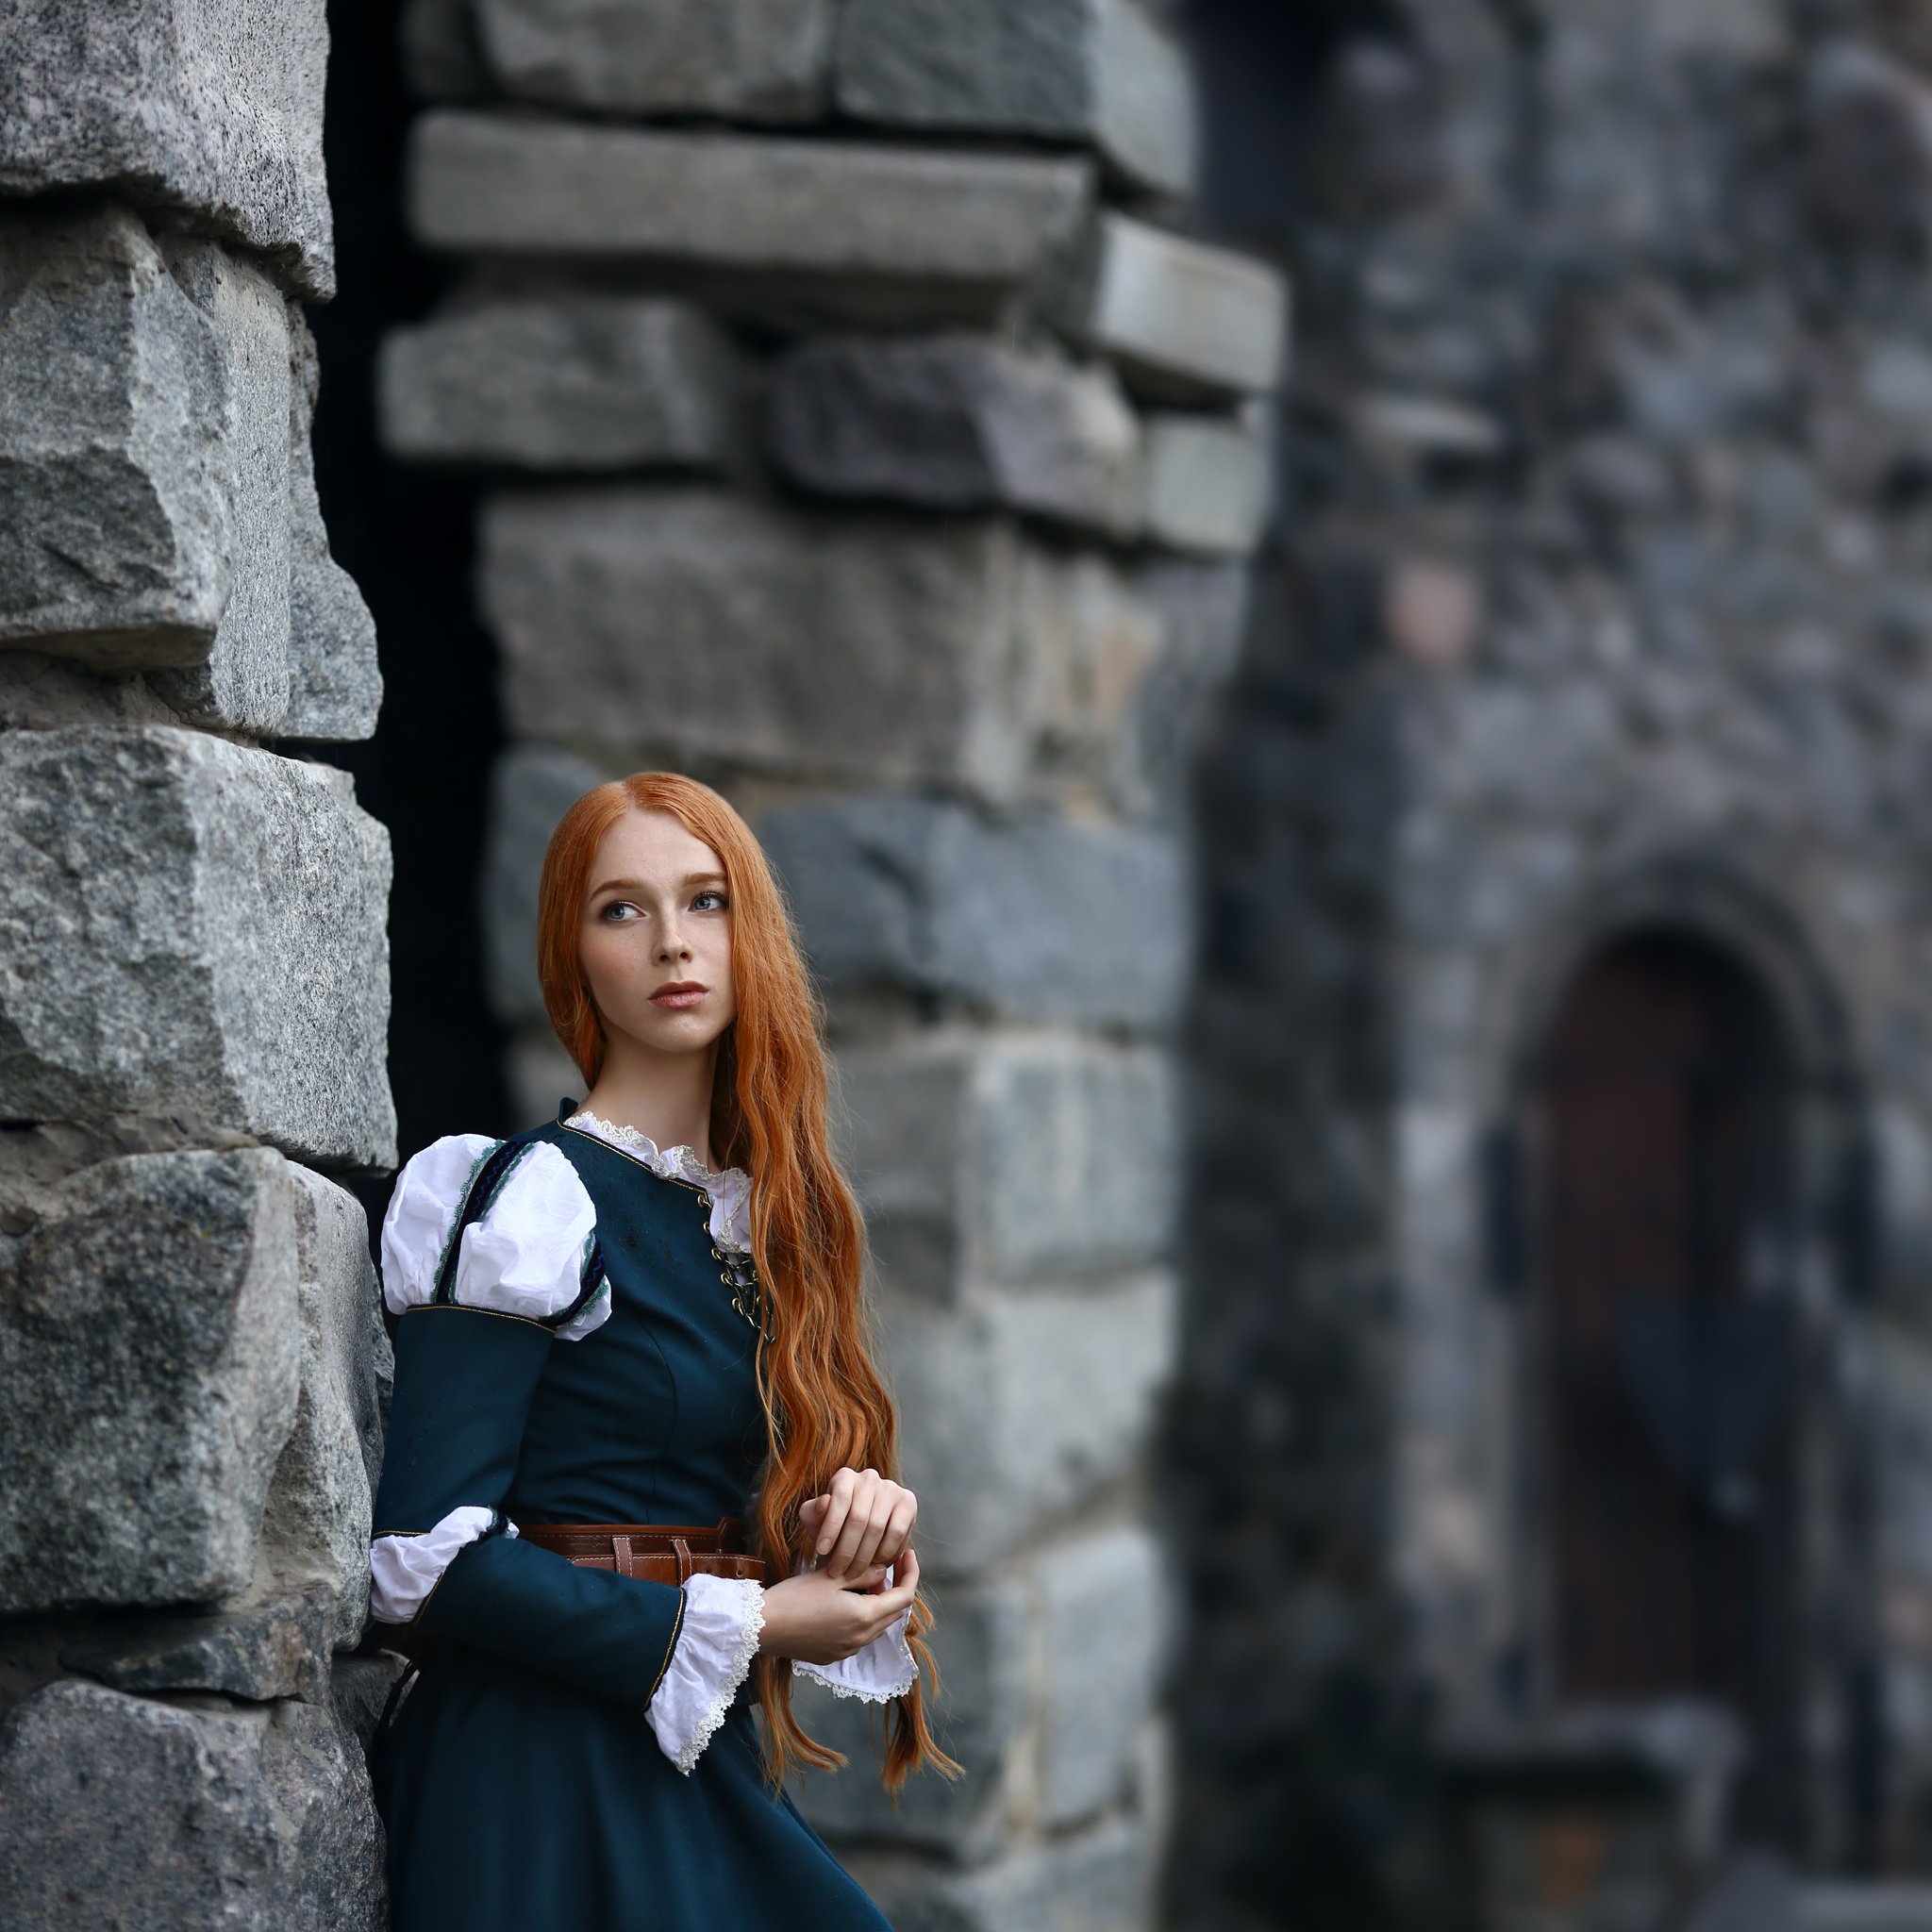 замок, храброе сердце, рыжая девушка, серый замок, серые камни, зеленое платье, исторический костюм, Ирина Голубятникова